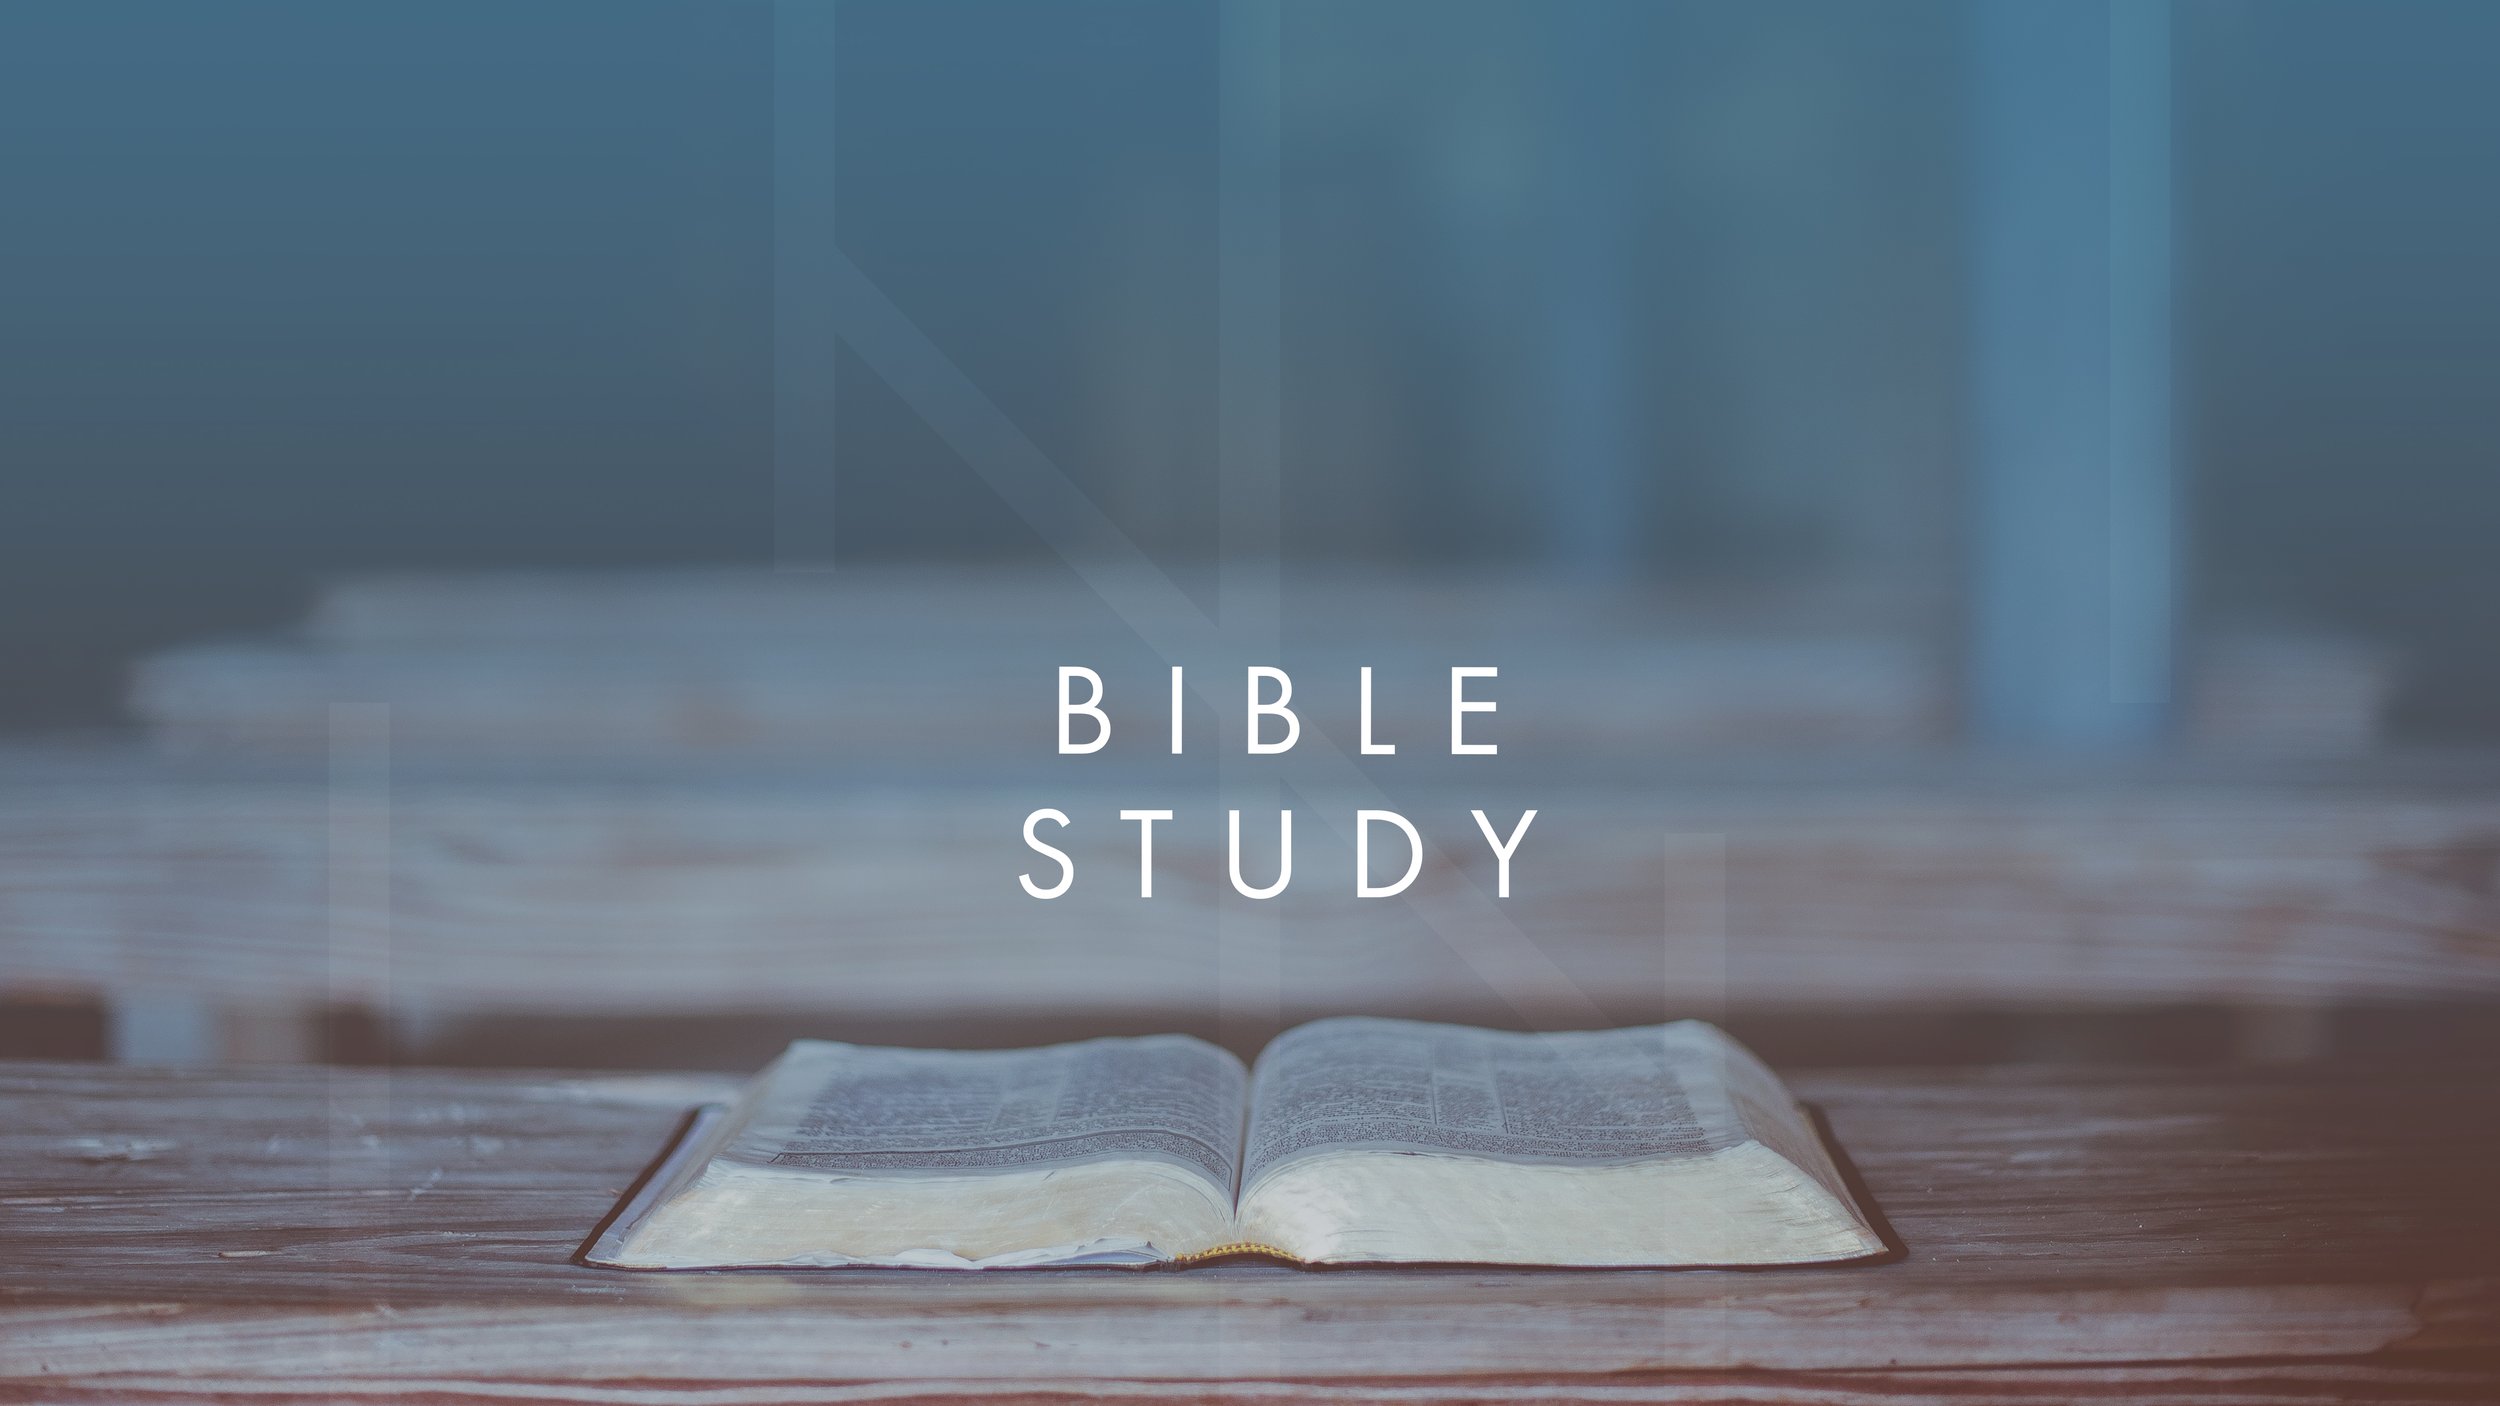 BIBLE STUDY.JPG